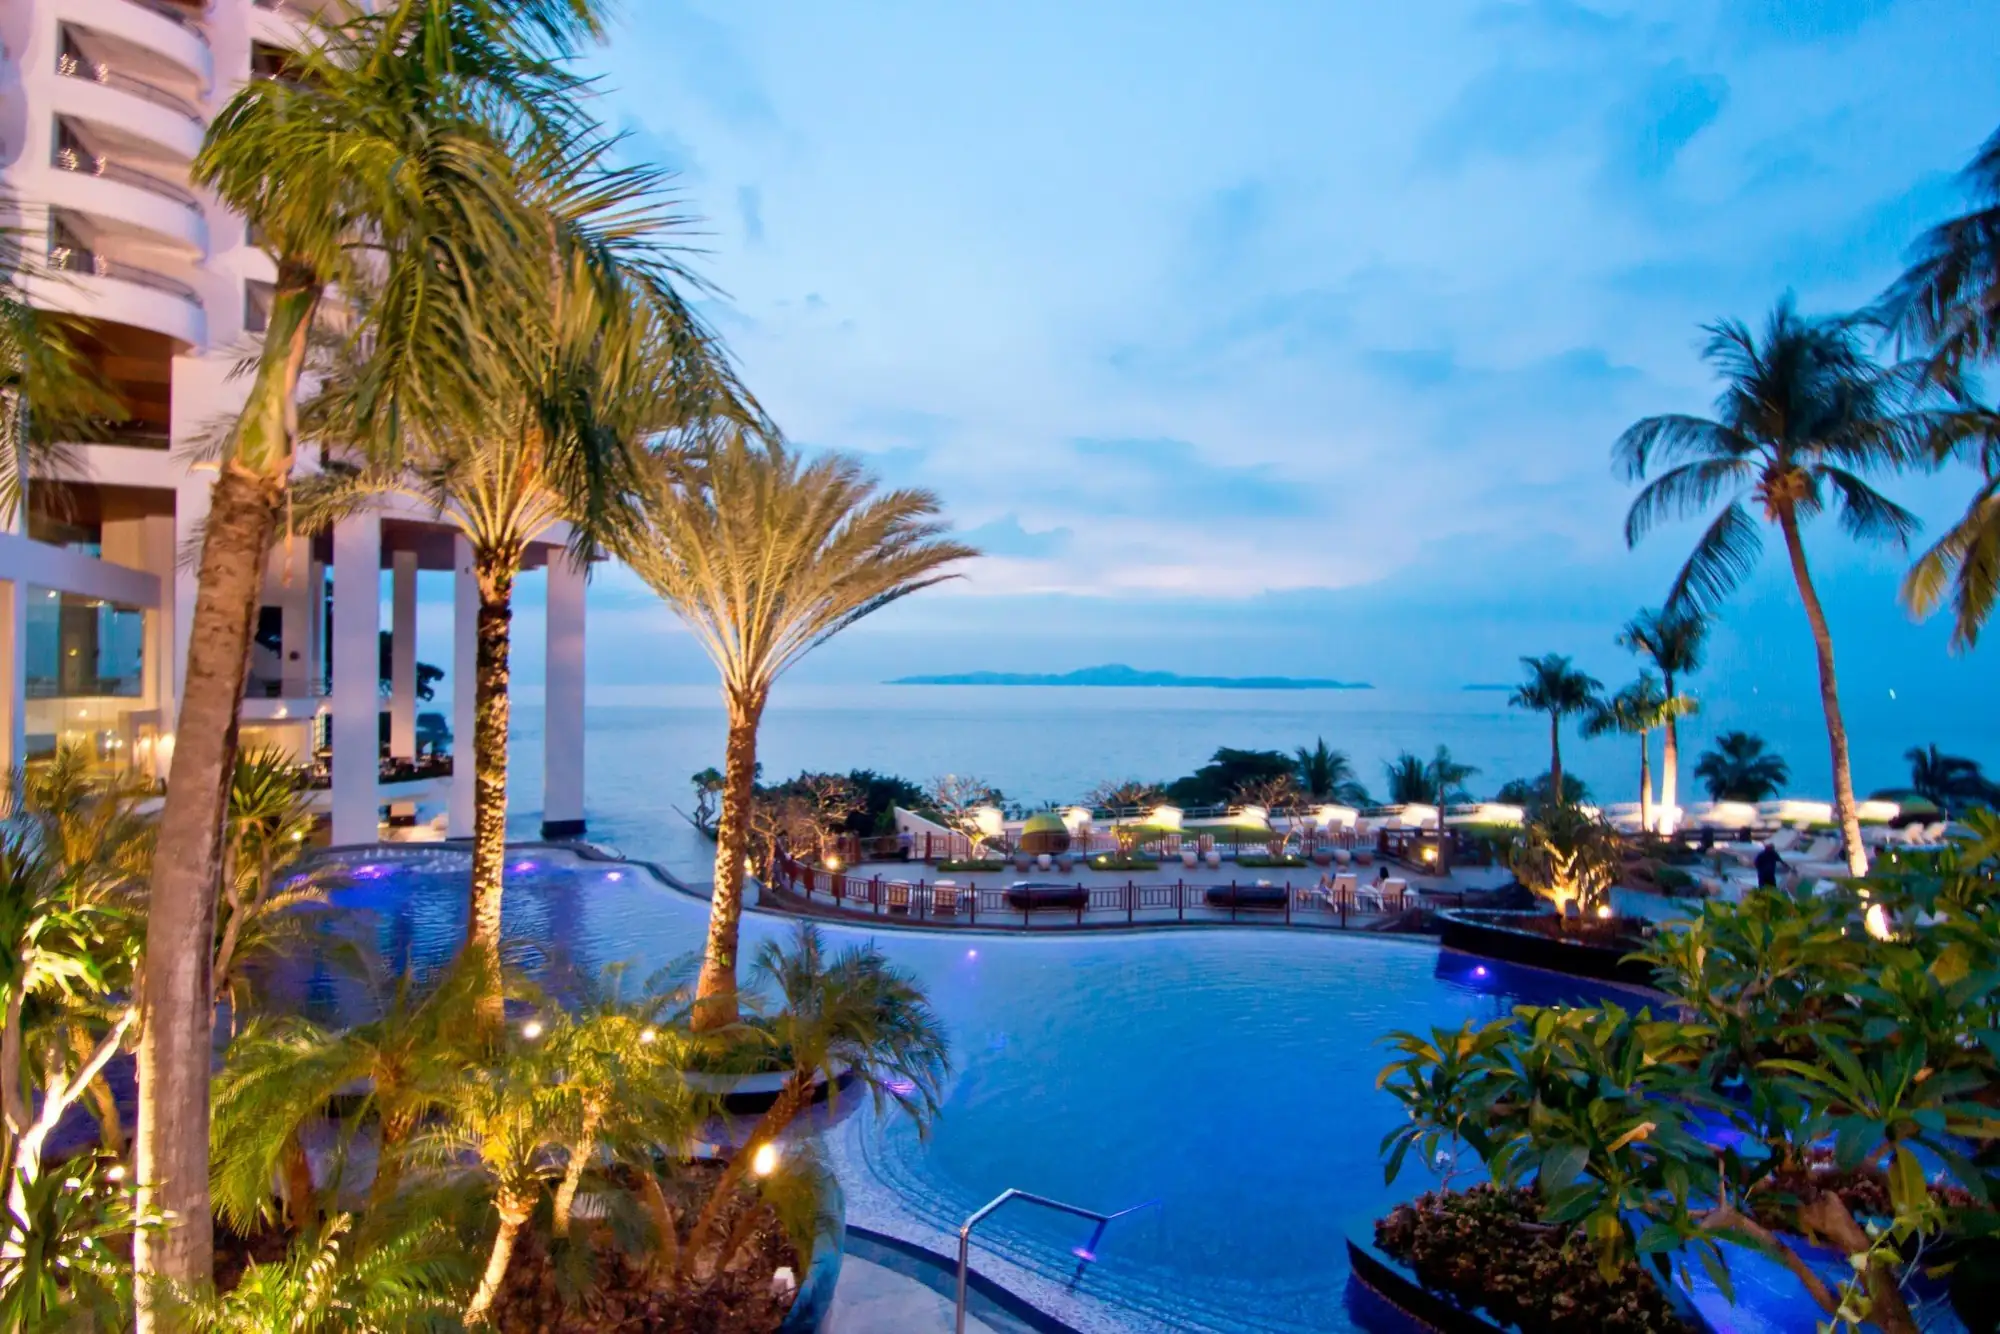 皇家克里夫酒店集團 Royal Cliff hotels Group 芭堤雅 Pattaya